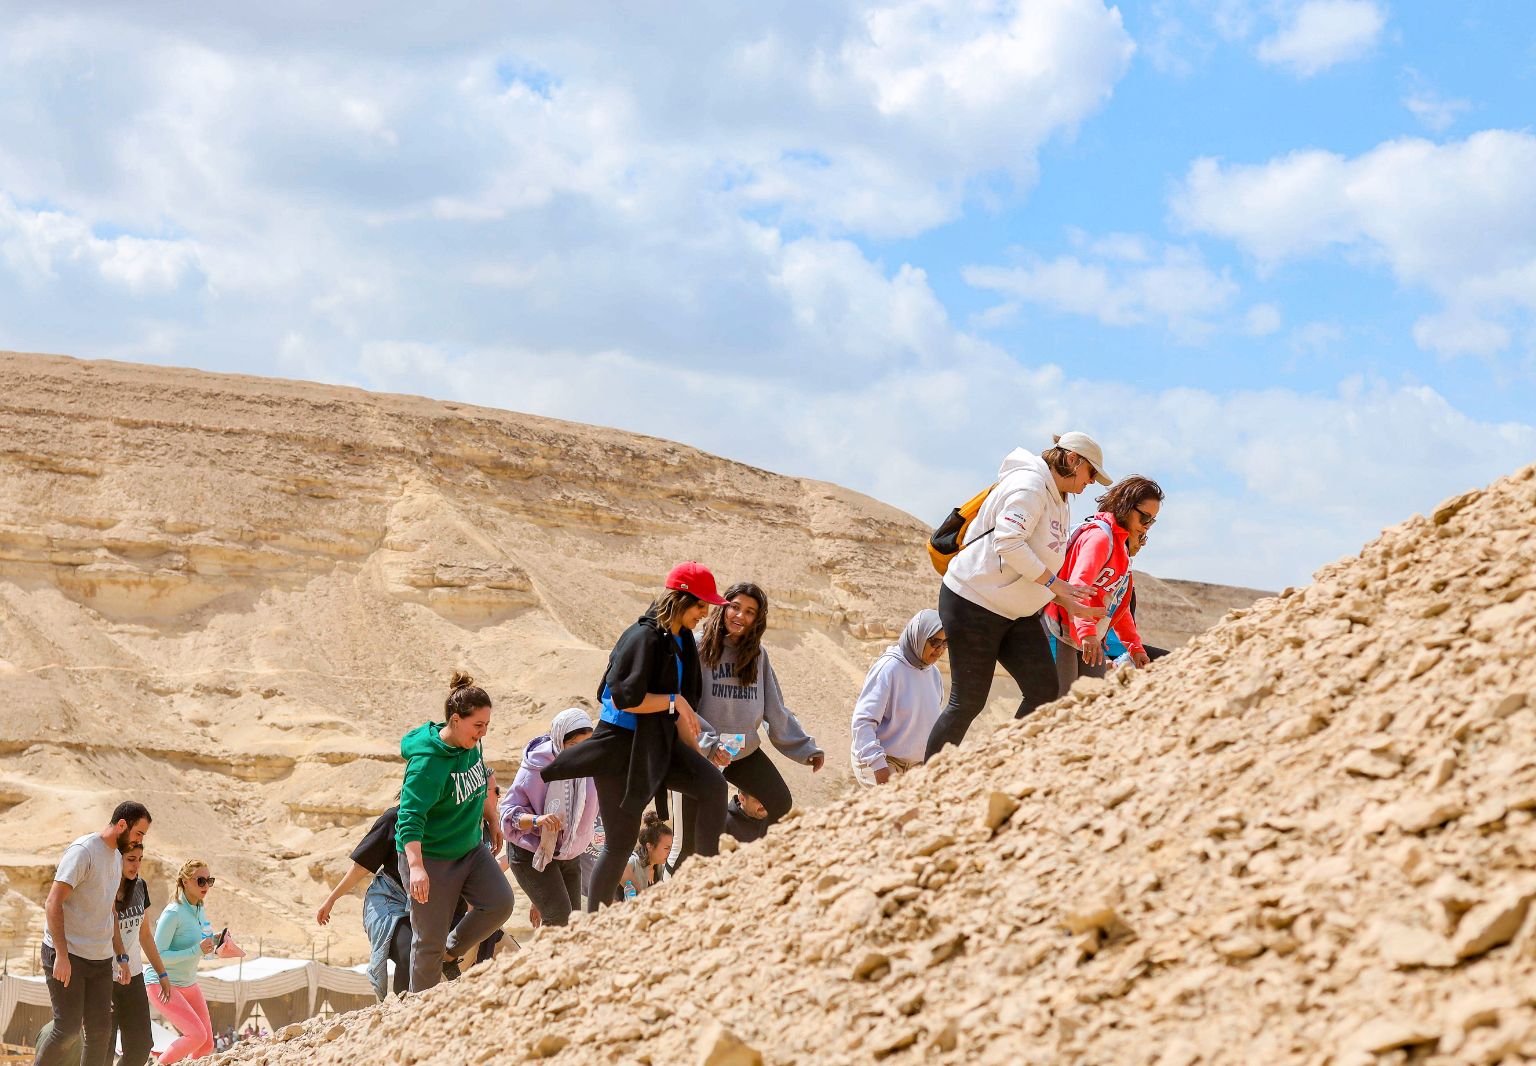 Foto: Mehrere Personen laufen einen steinigen Berg nach oben.